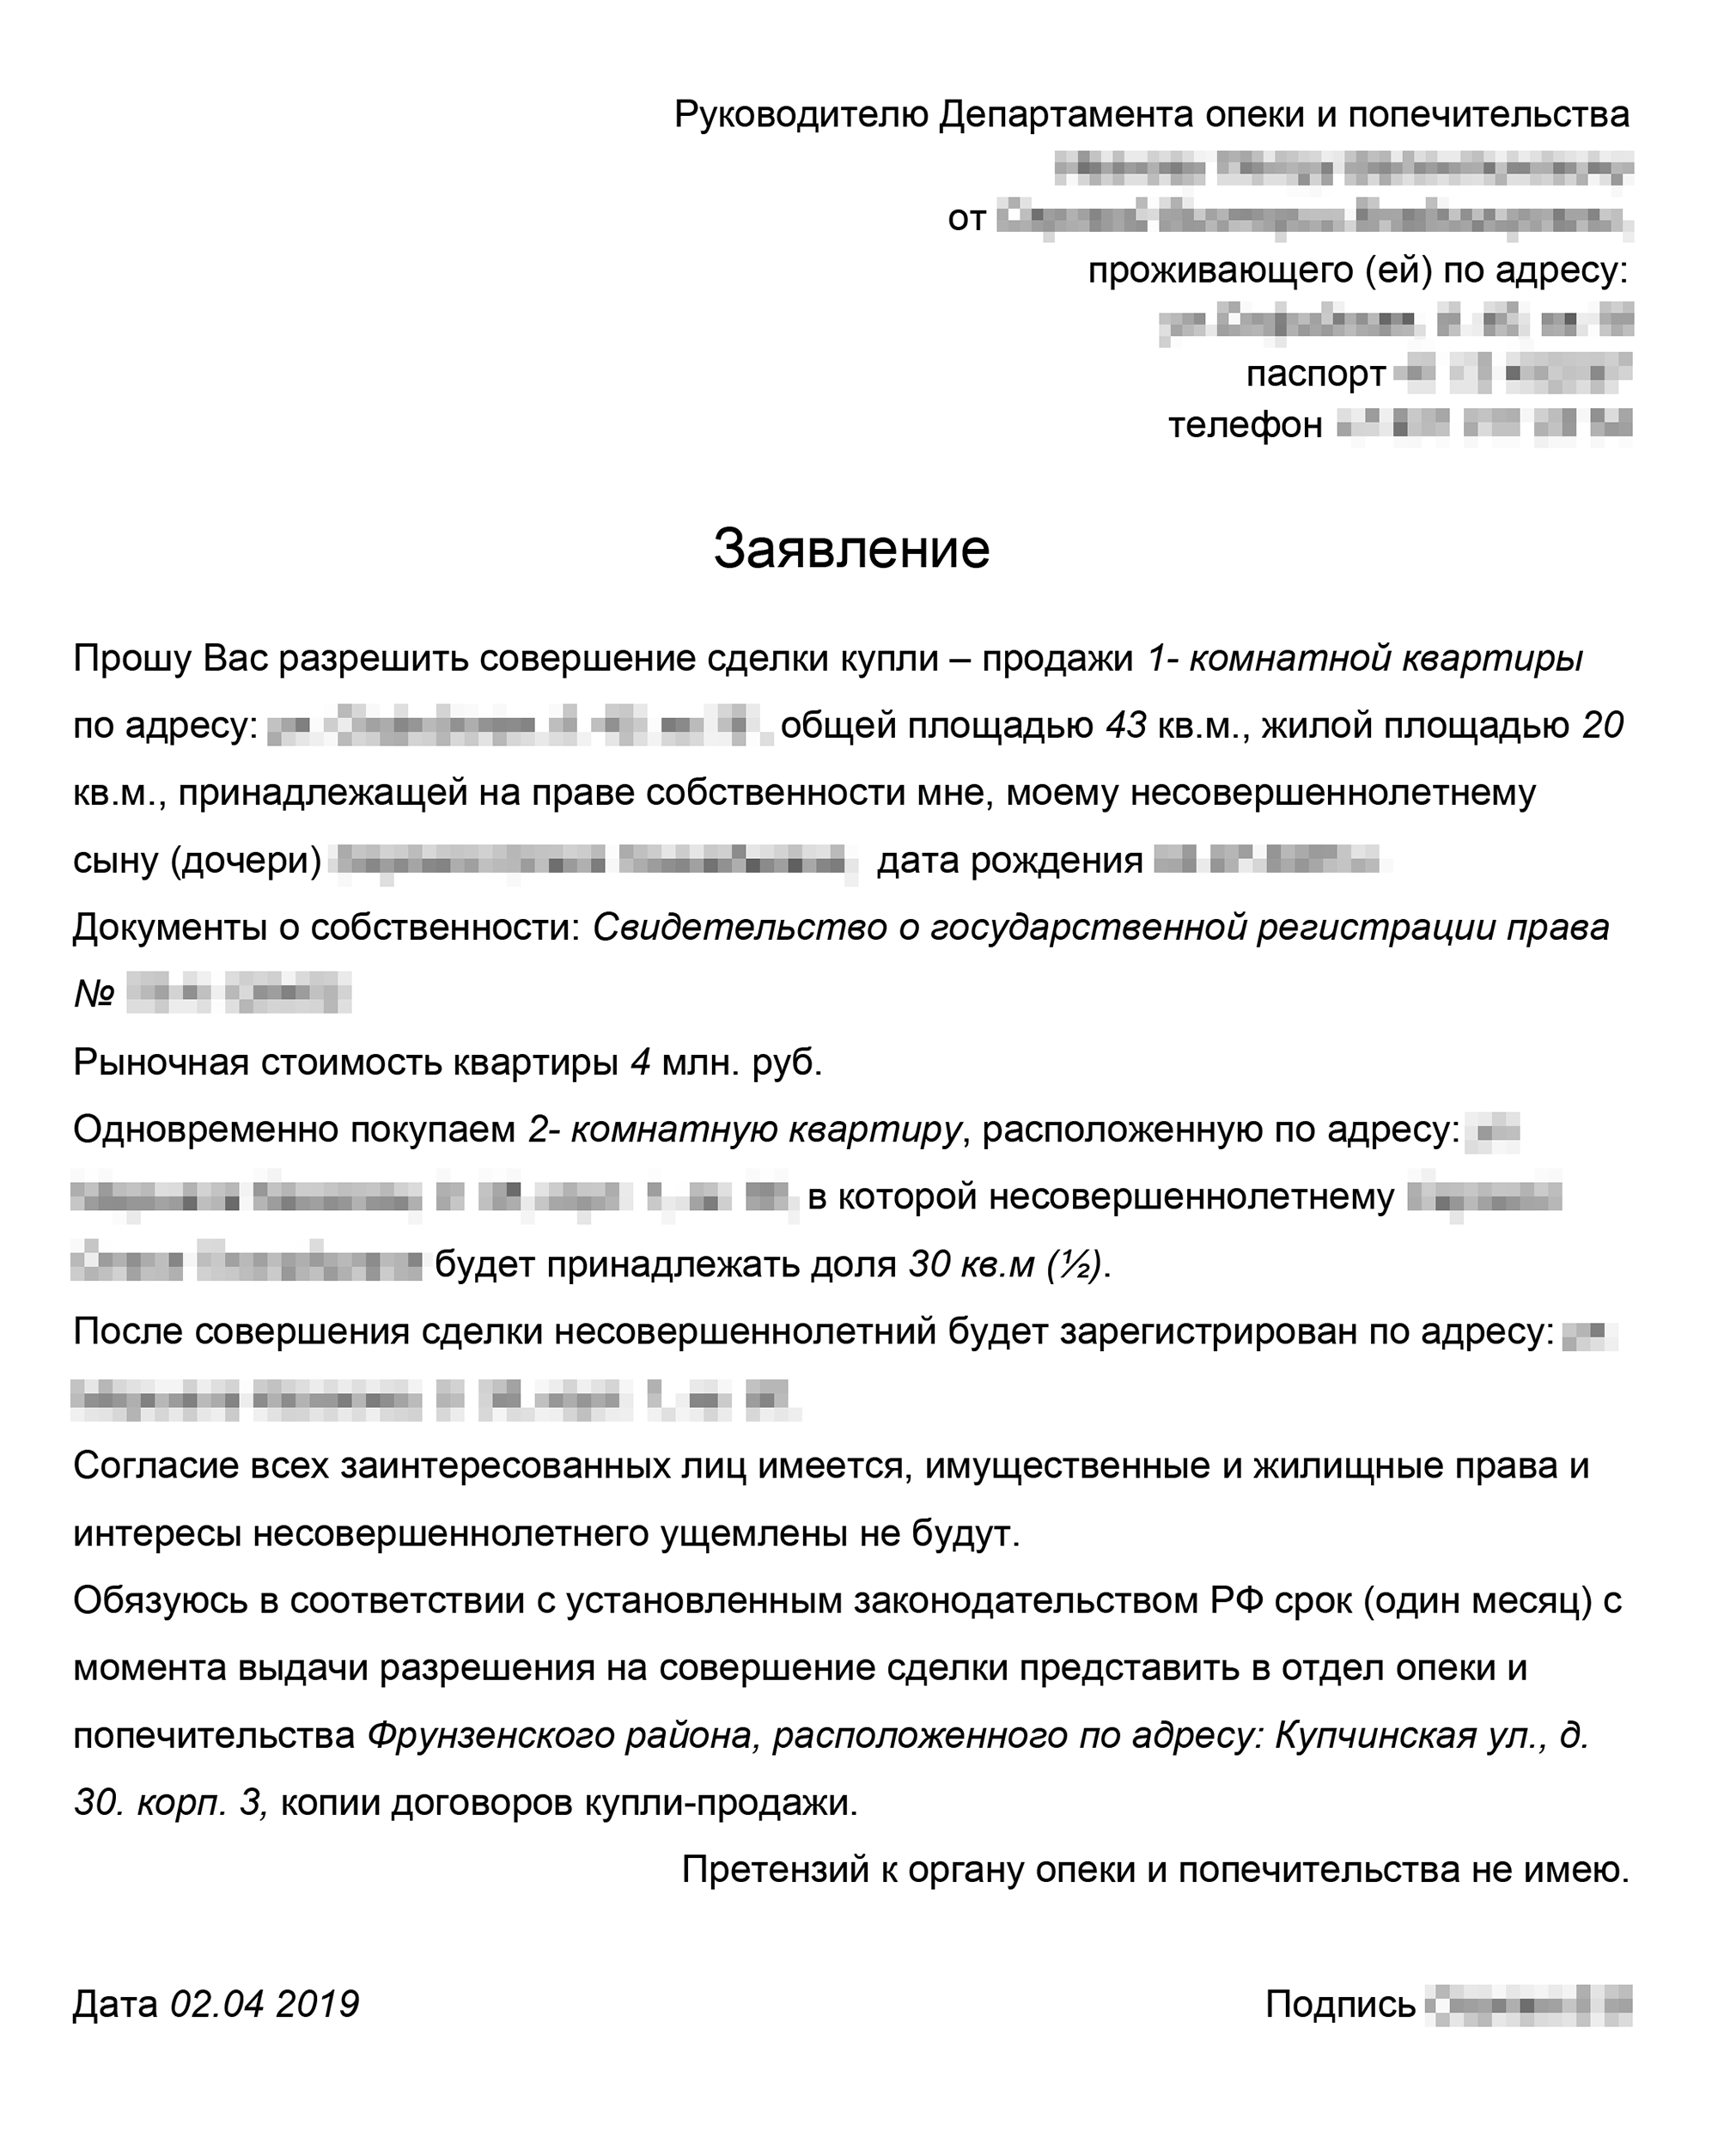 Ежемесячное пособие на ребенка до 18 лет в москве в 2020 году